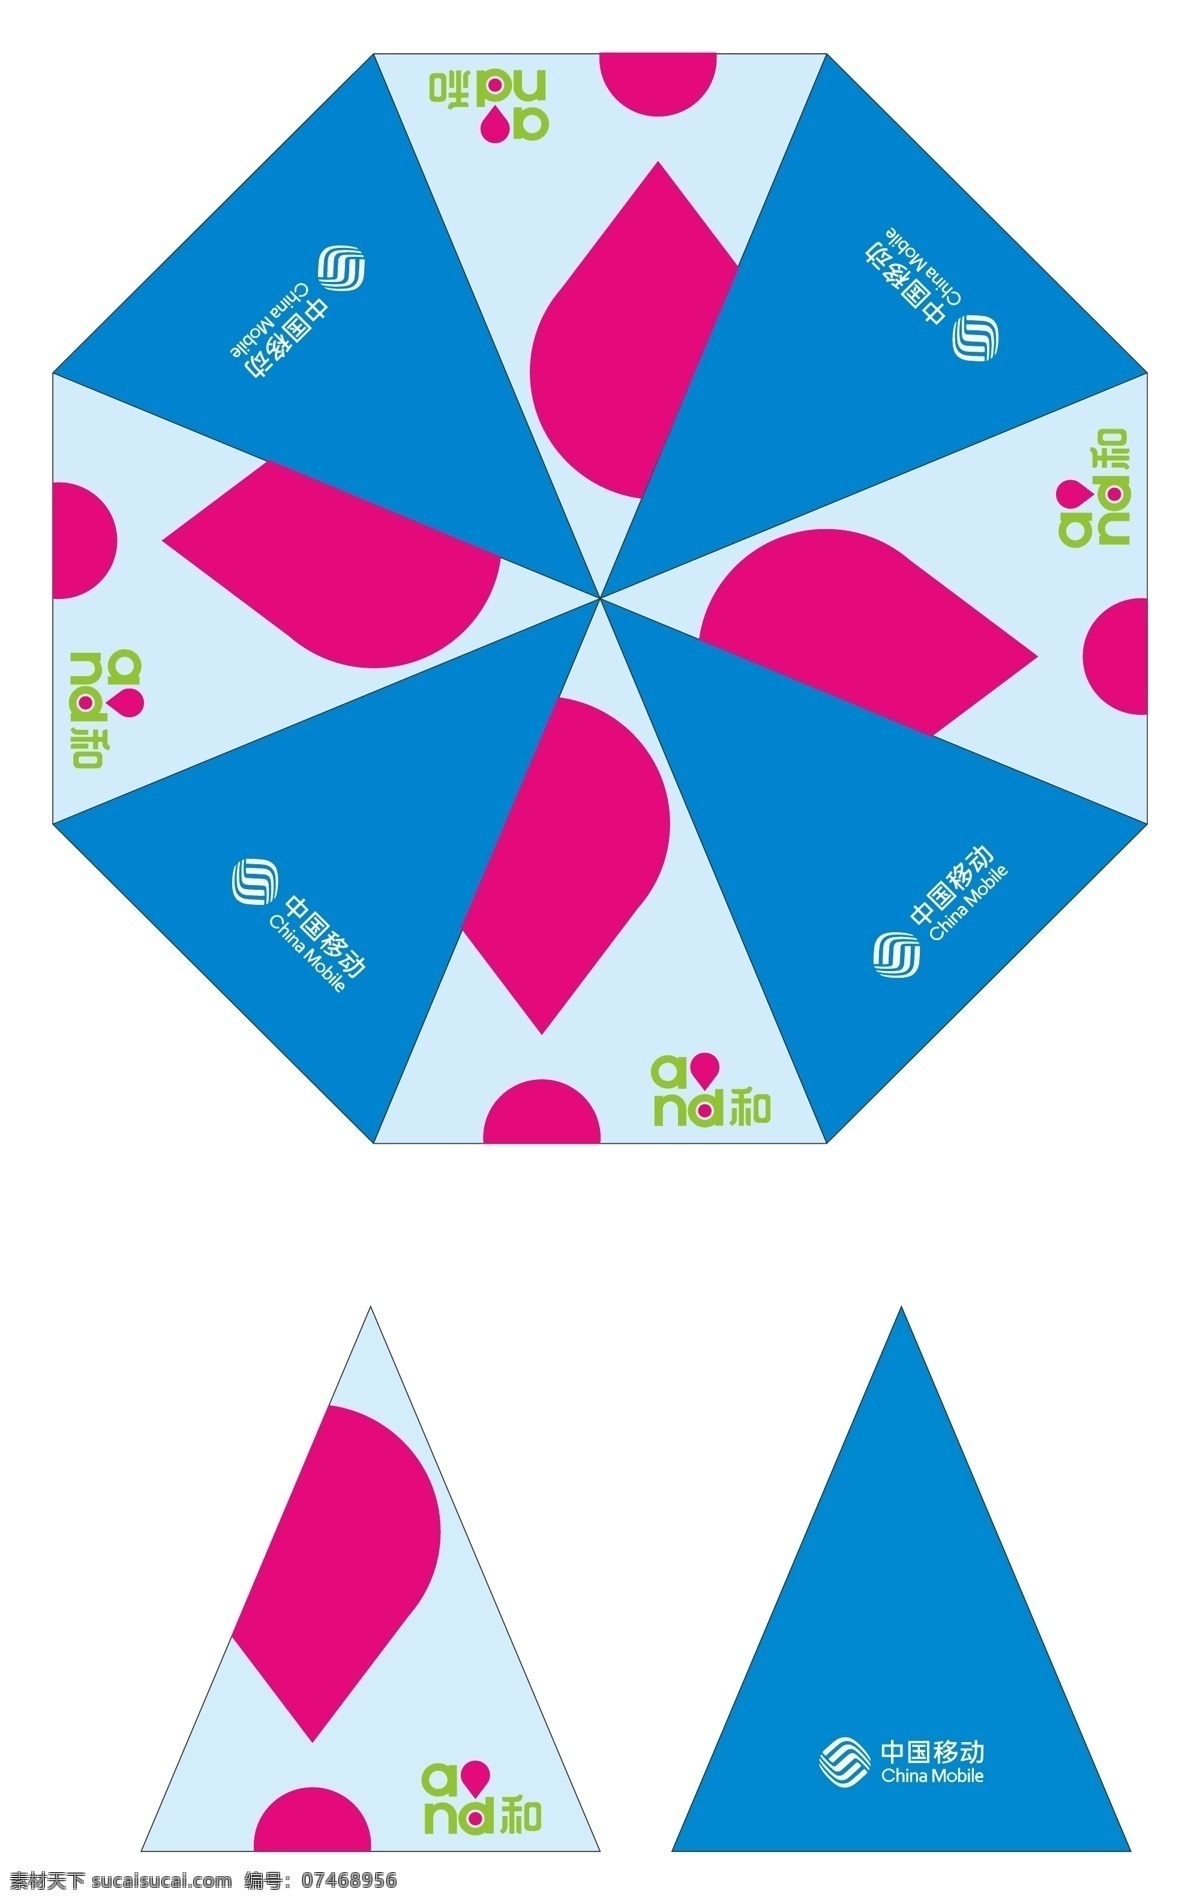 中国移动 三 折伞 三折伞设计 and和 原创设计 其他原创设计